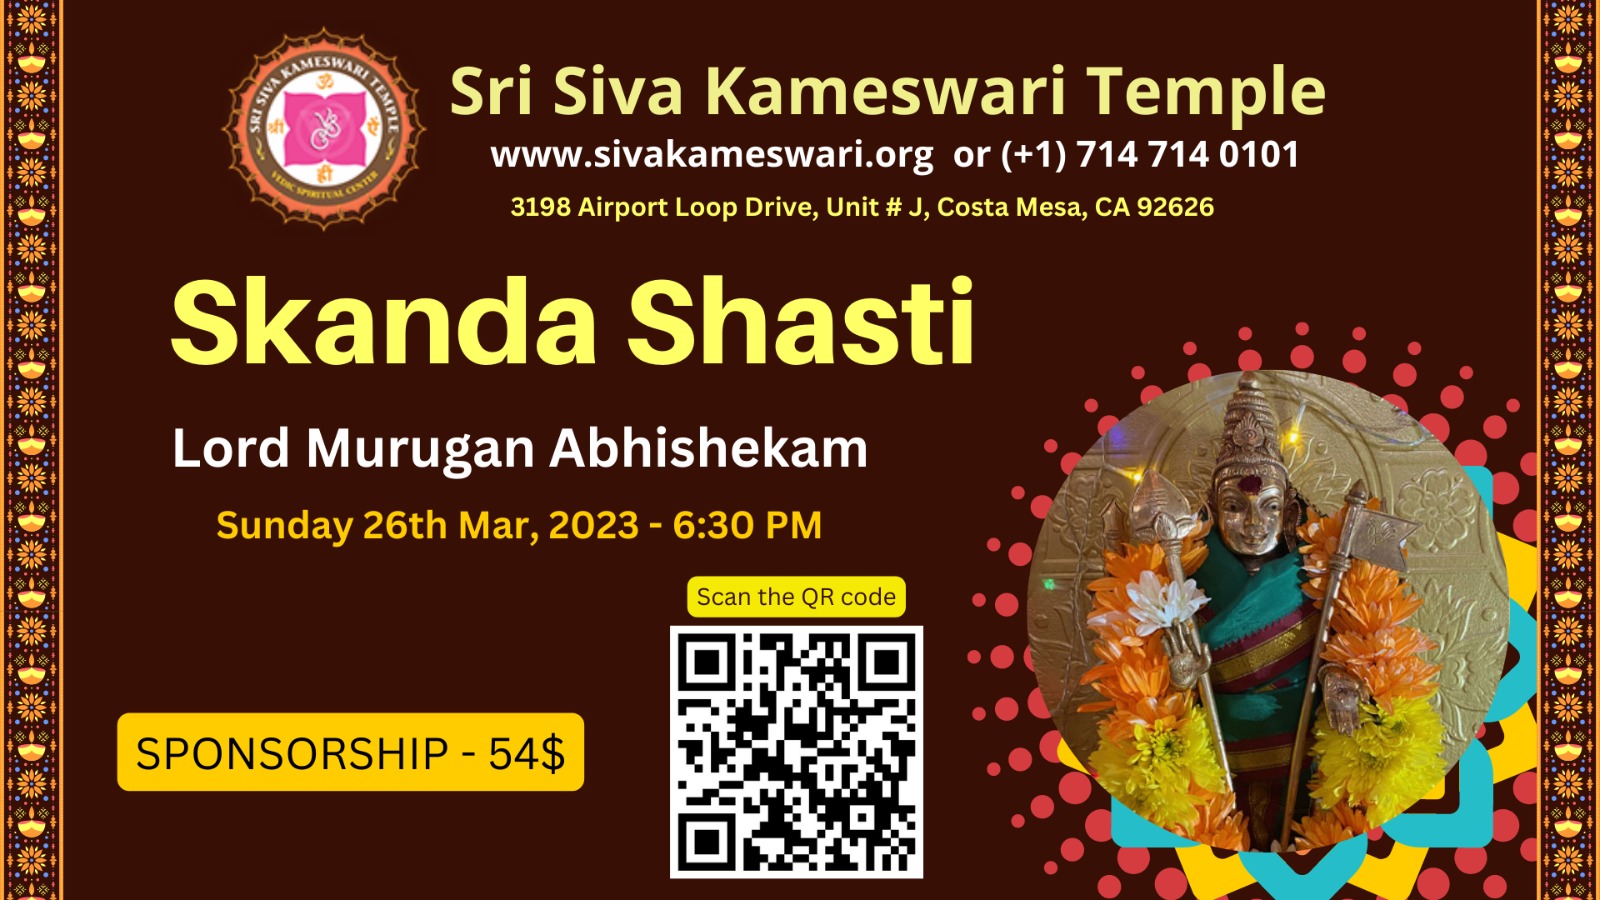 For more details and sponsorship visit https://sivakameswari.org/lord-kartikeya-murugan-archana/